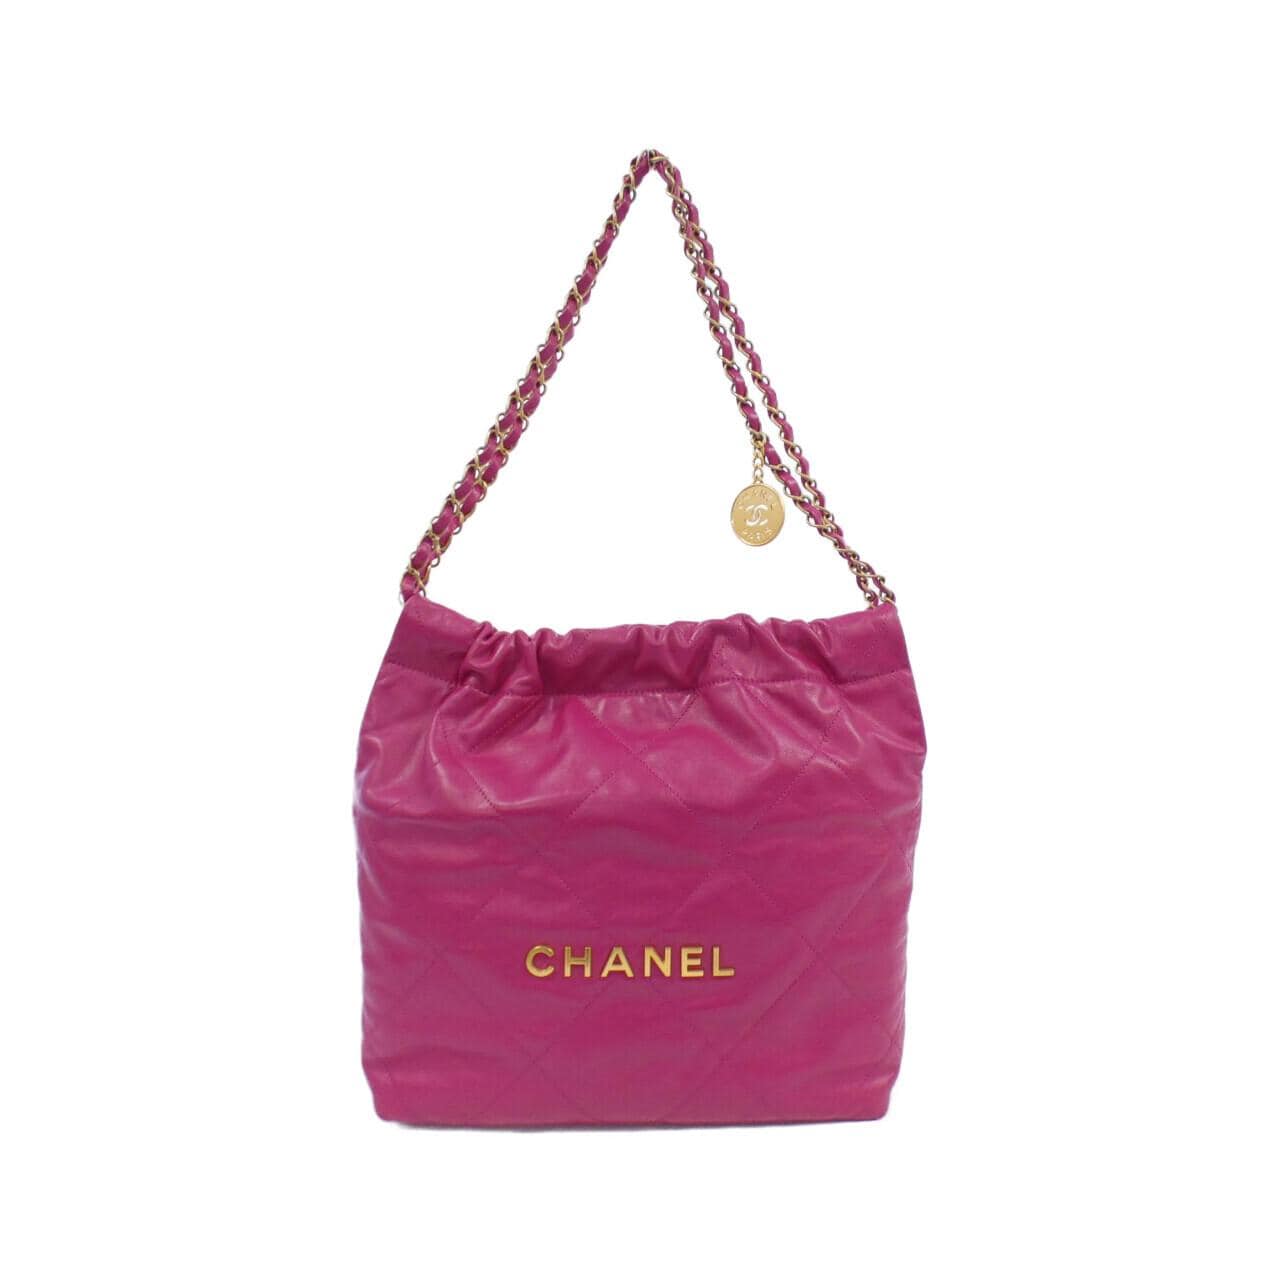 CHANEL CHANEL 22 line AS3260 shoulder bag